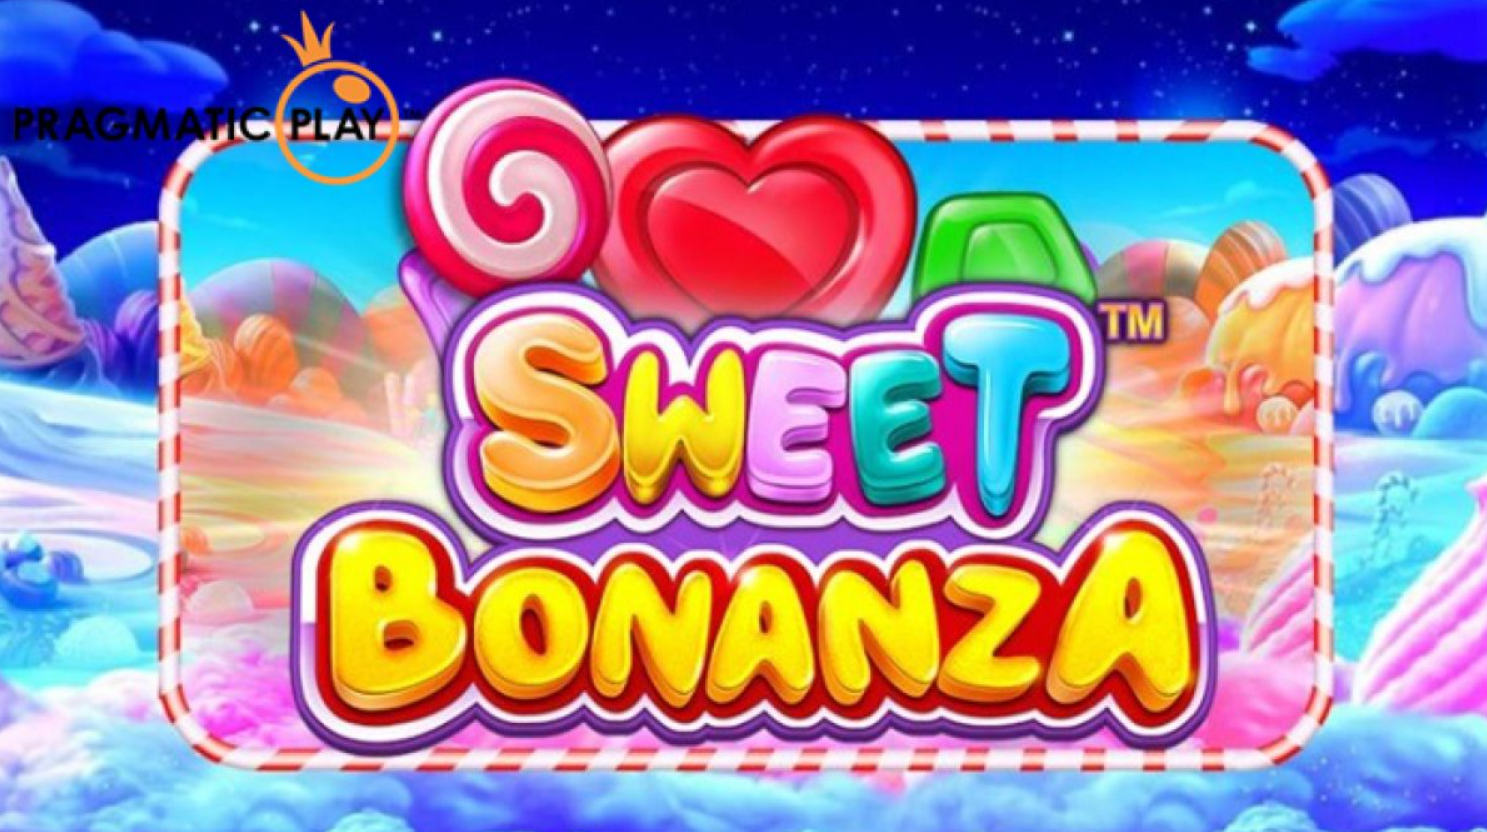 sweet bonanza slot oynanan siteler nelerdir